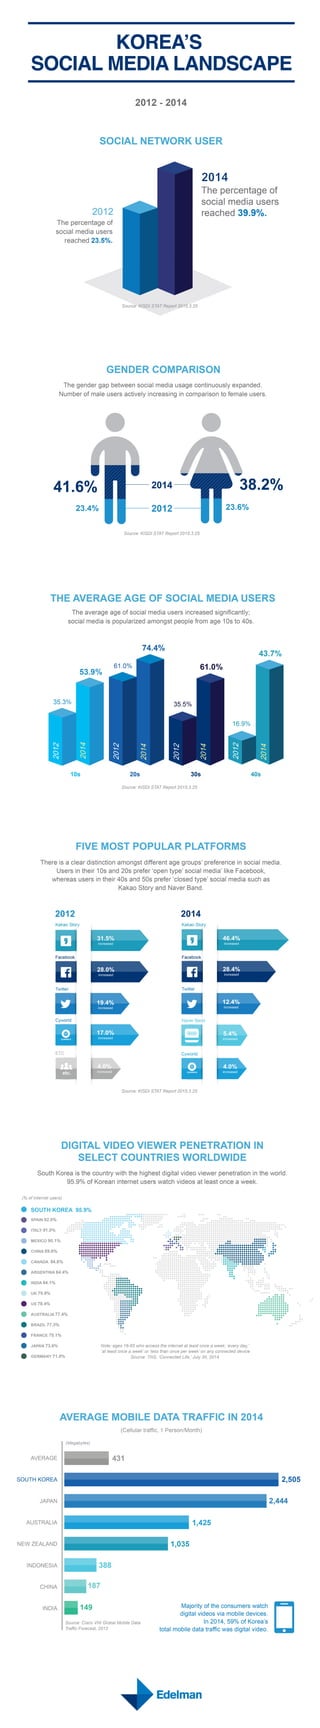 Social Media Use in South Korea 2015